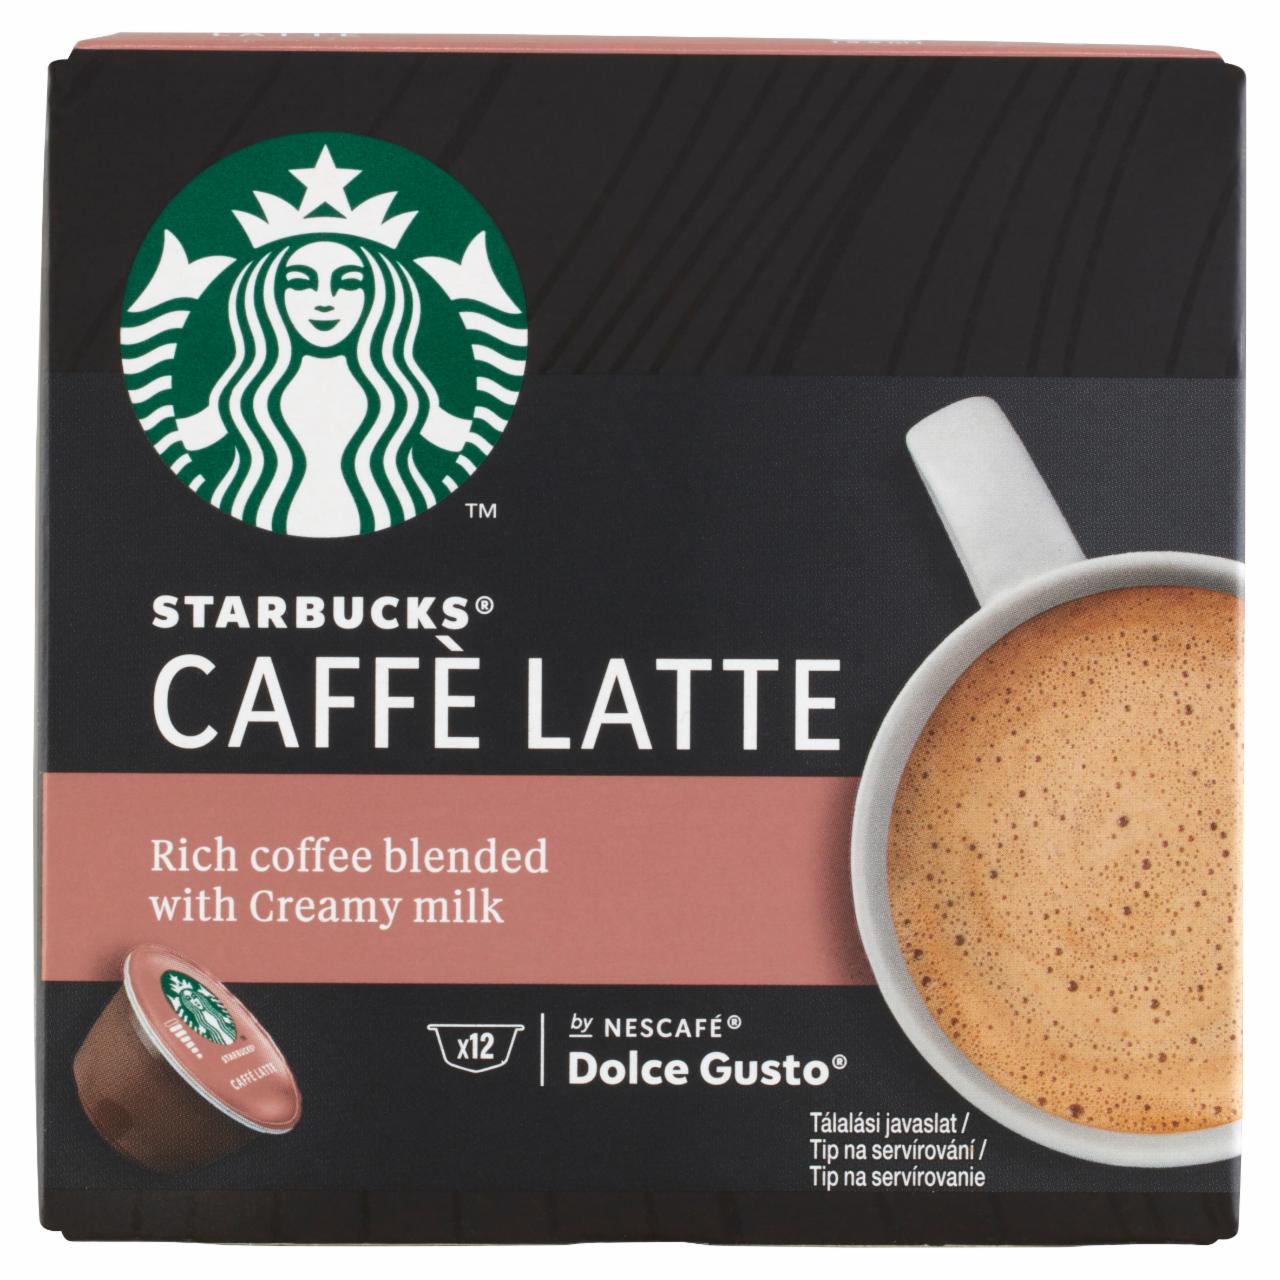 Képek - Starbucks by Nescafé Dolce Gusto Caffé Latte tejes kávékapszula 12 x 10,1 g (121,2 g)